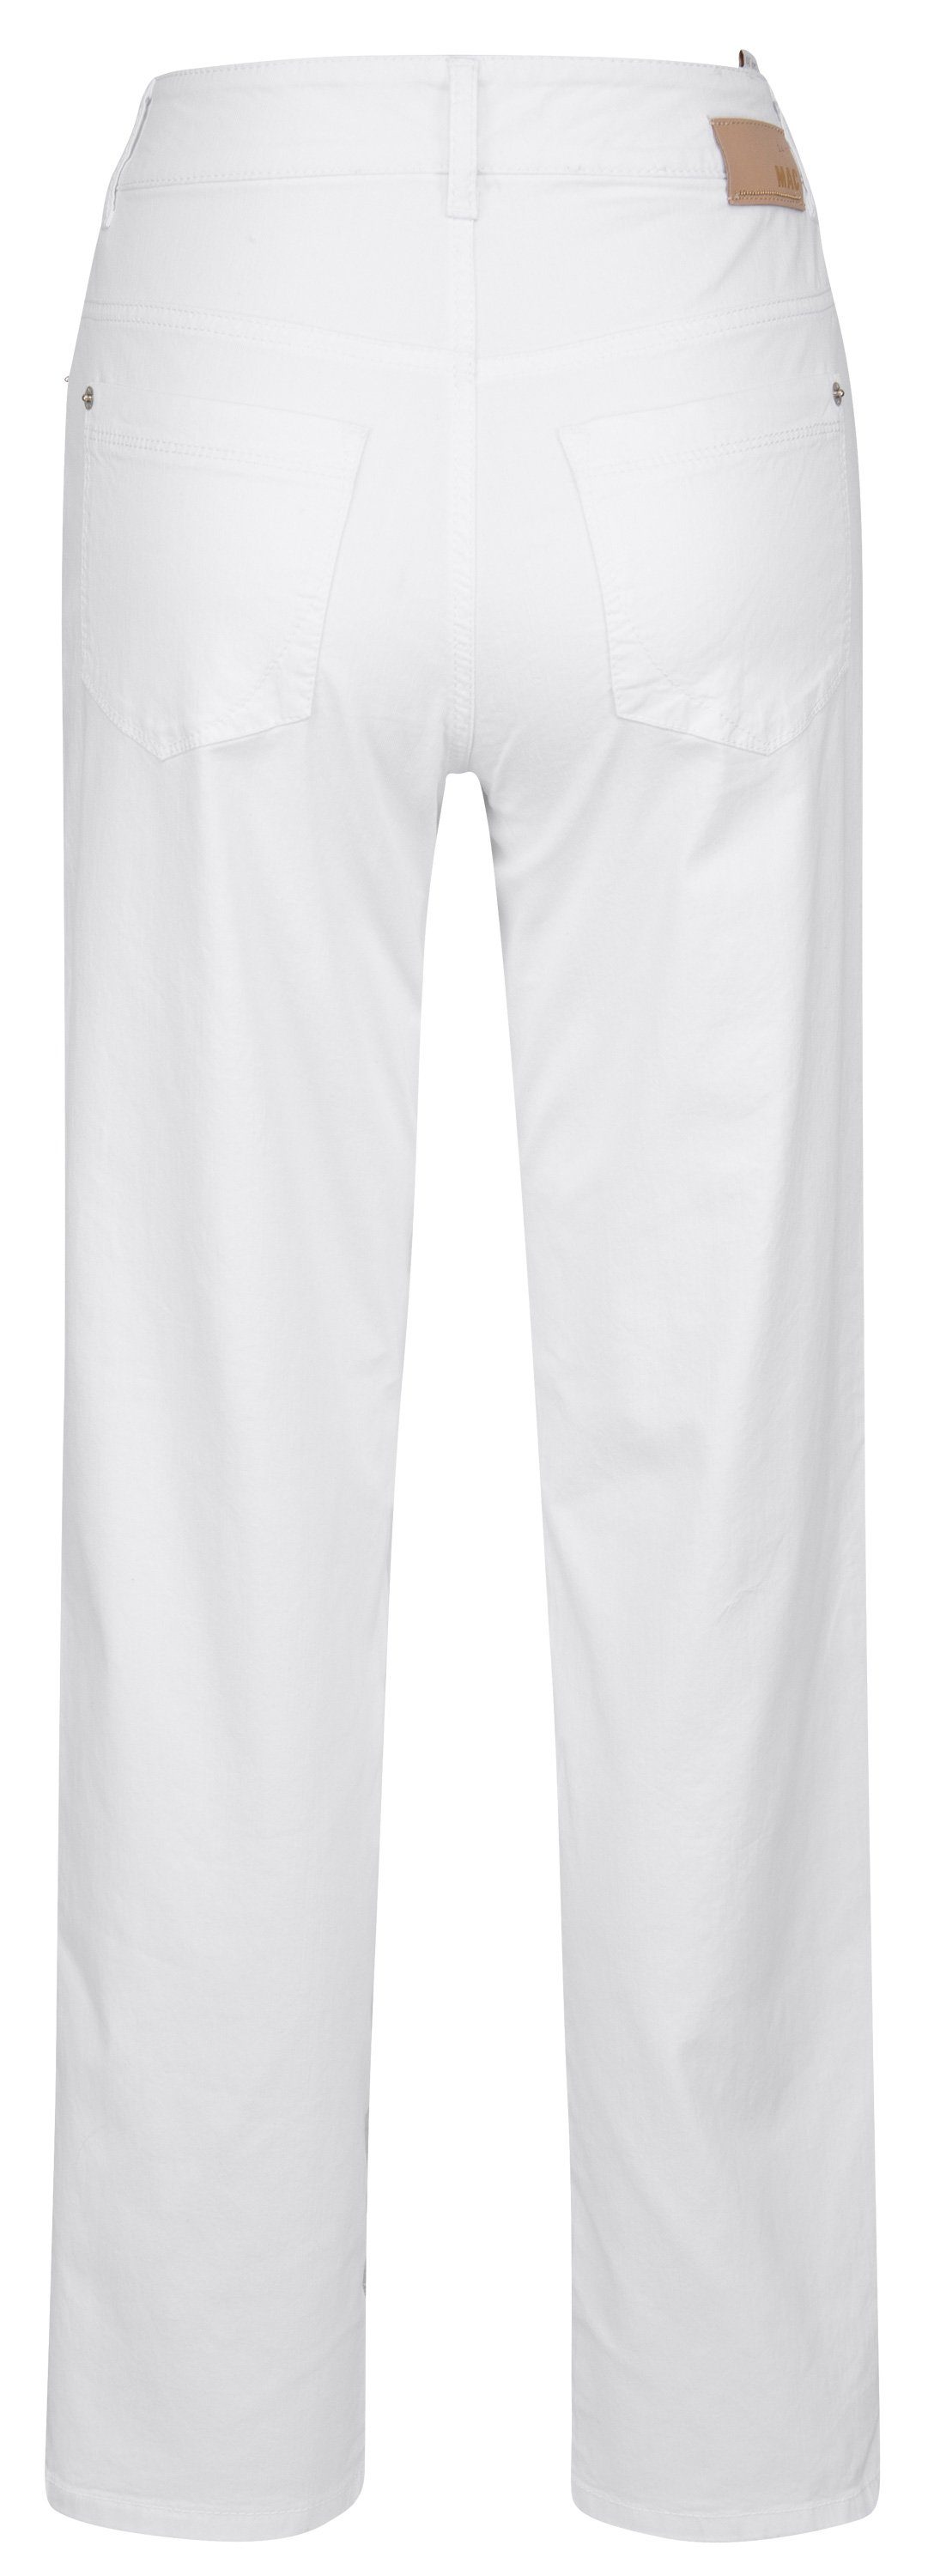 MAC GRACIA Stretch-Jeans white MAC 010 5381-00-0402